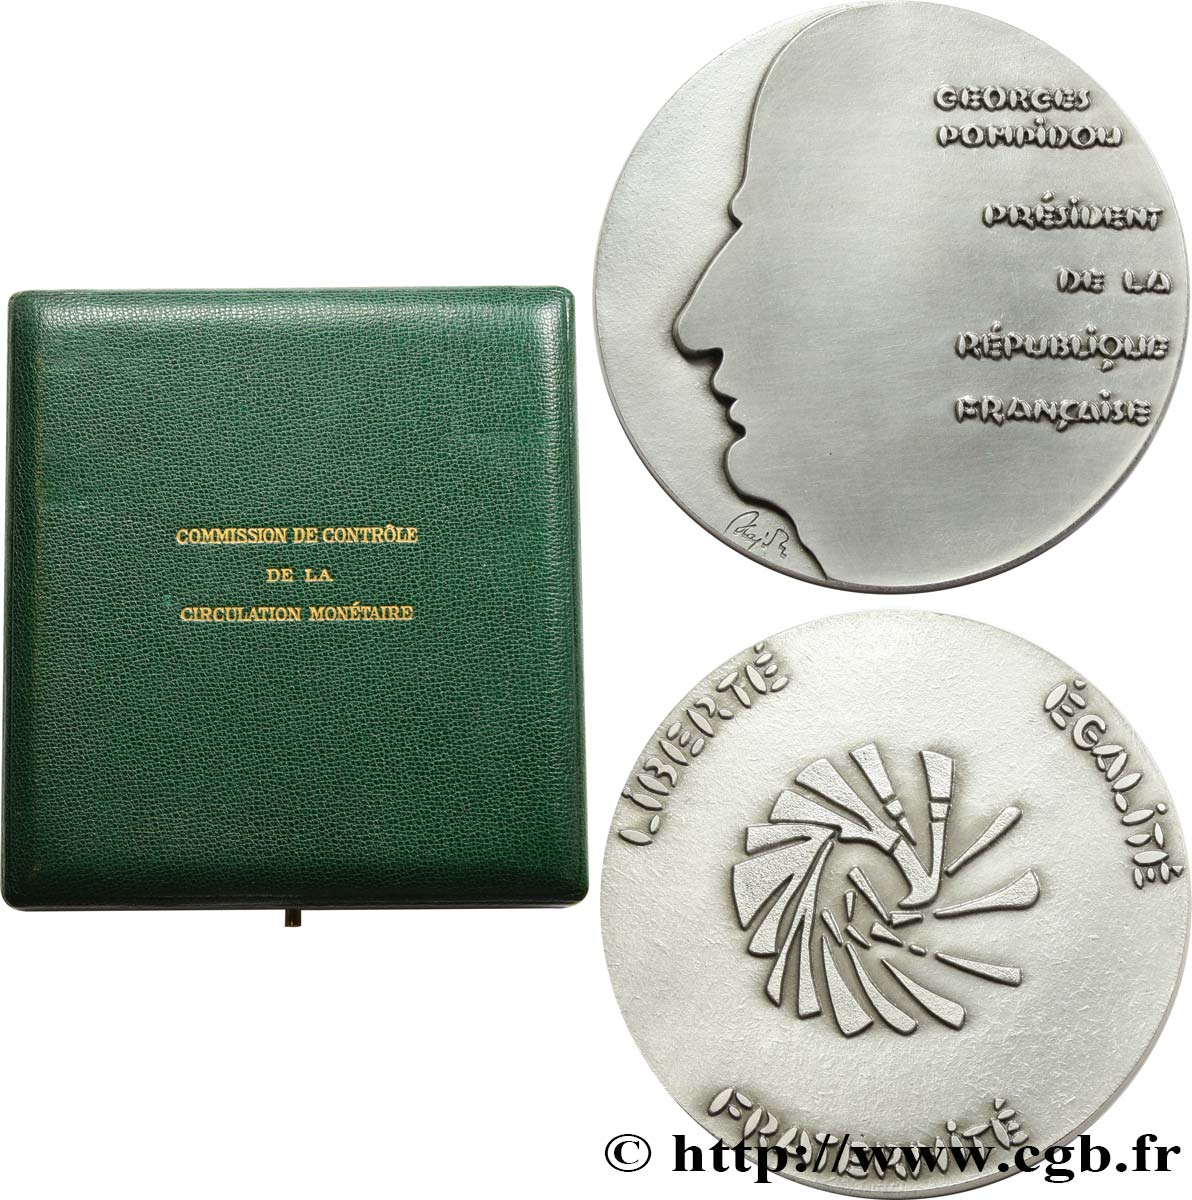 QUINTA REPUBBLICA FRANCESE Médaille, Georges Pompidou, commission de contrôle de la circulation monétaire MS